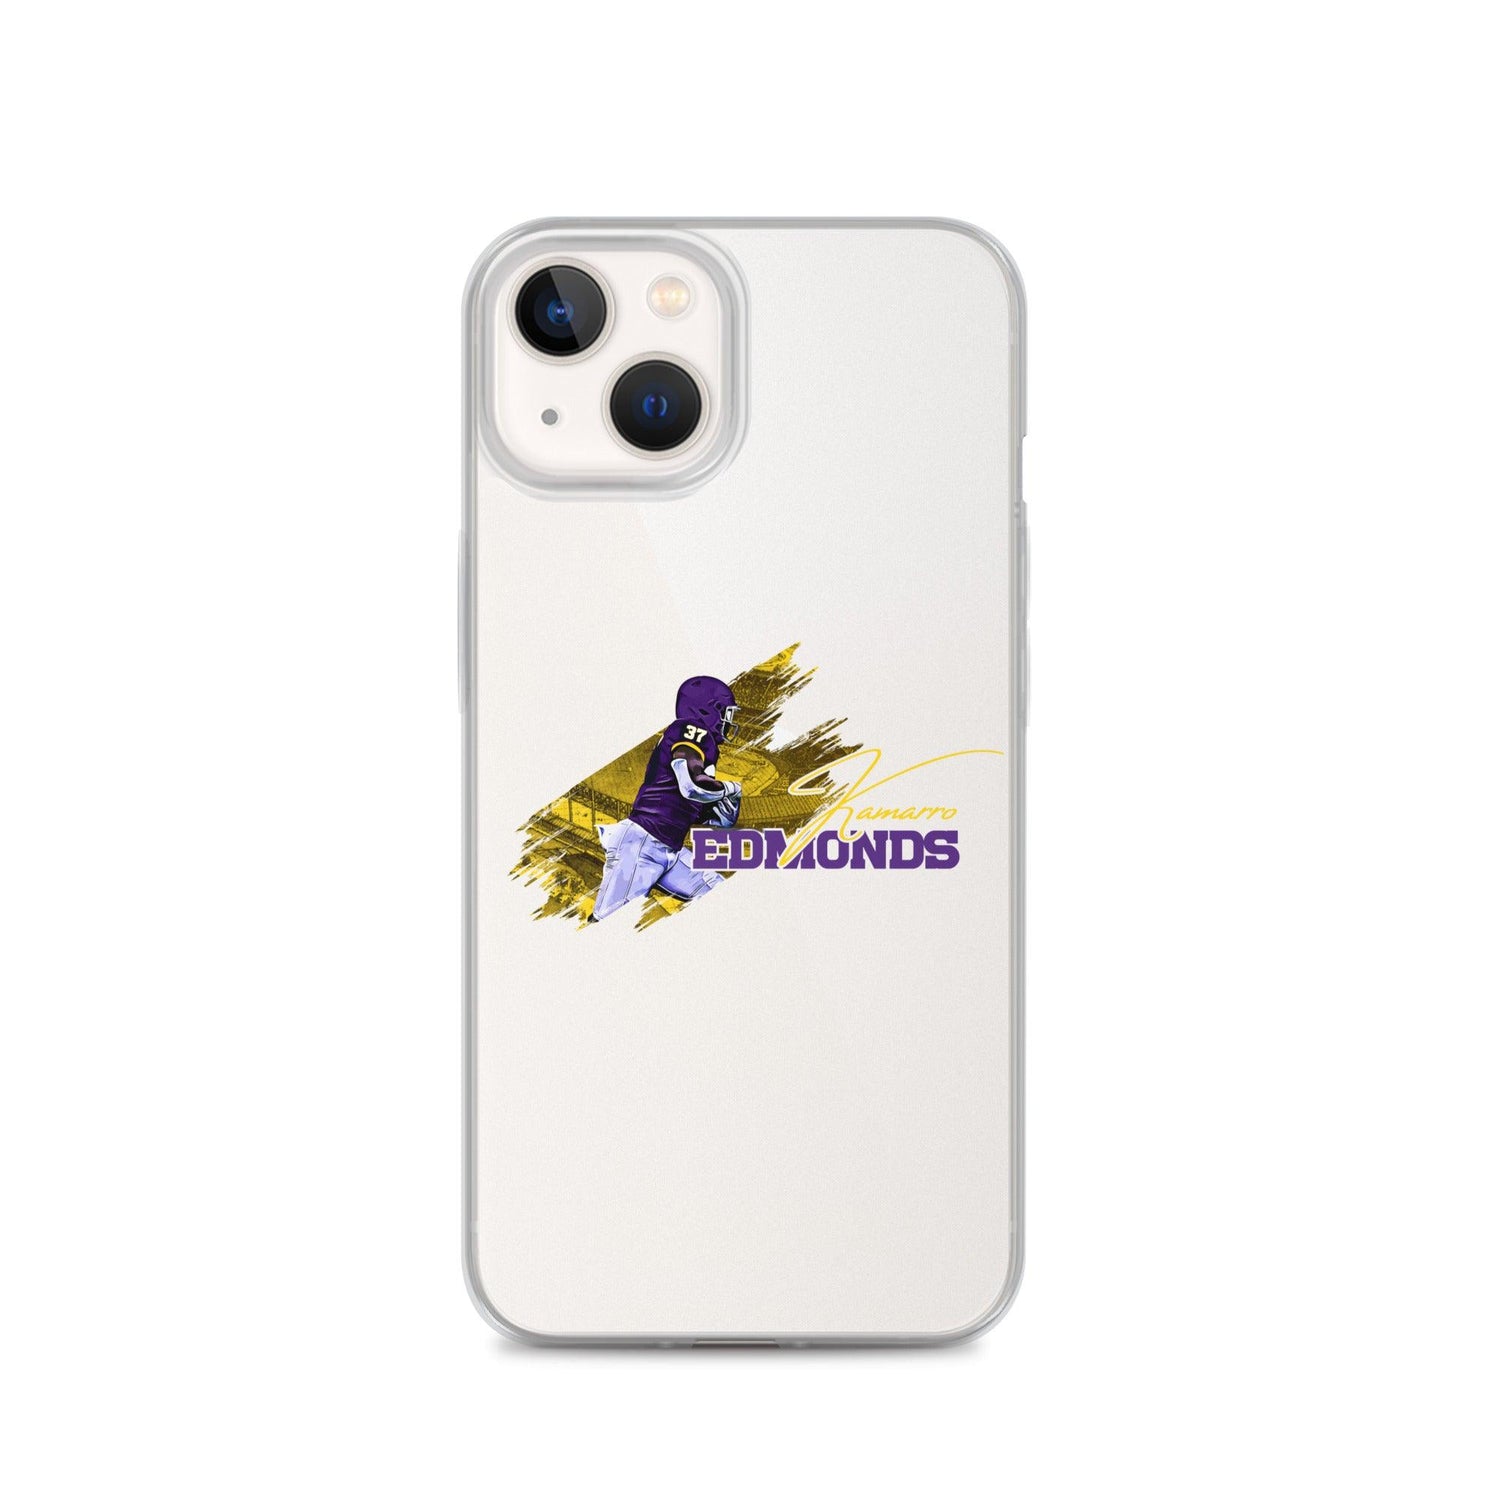 Kamarro Edmonds "Gameday" iPhone Case - Fan Arch